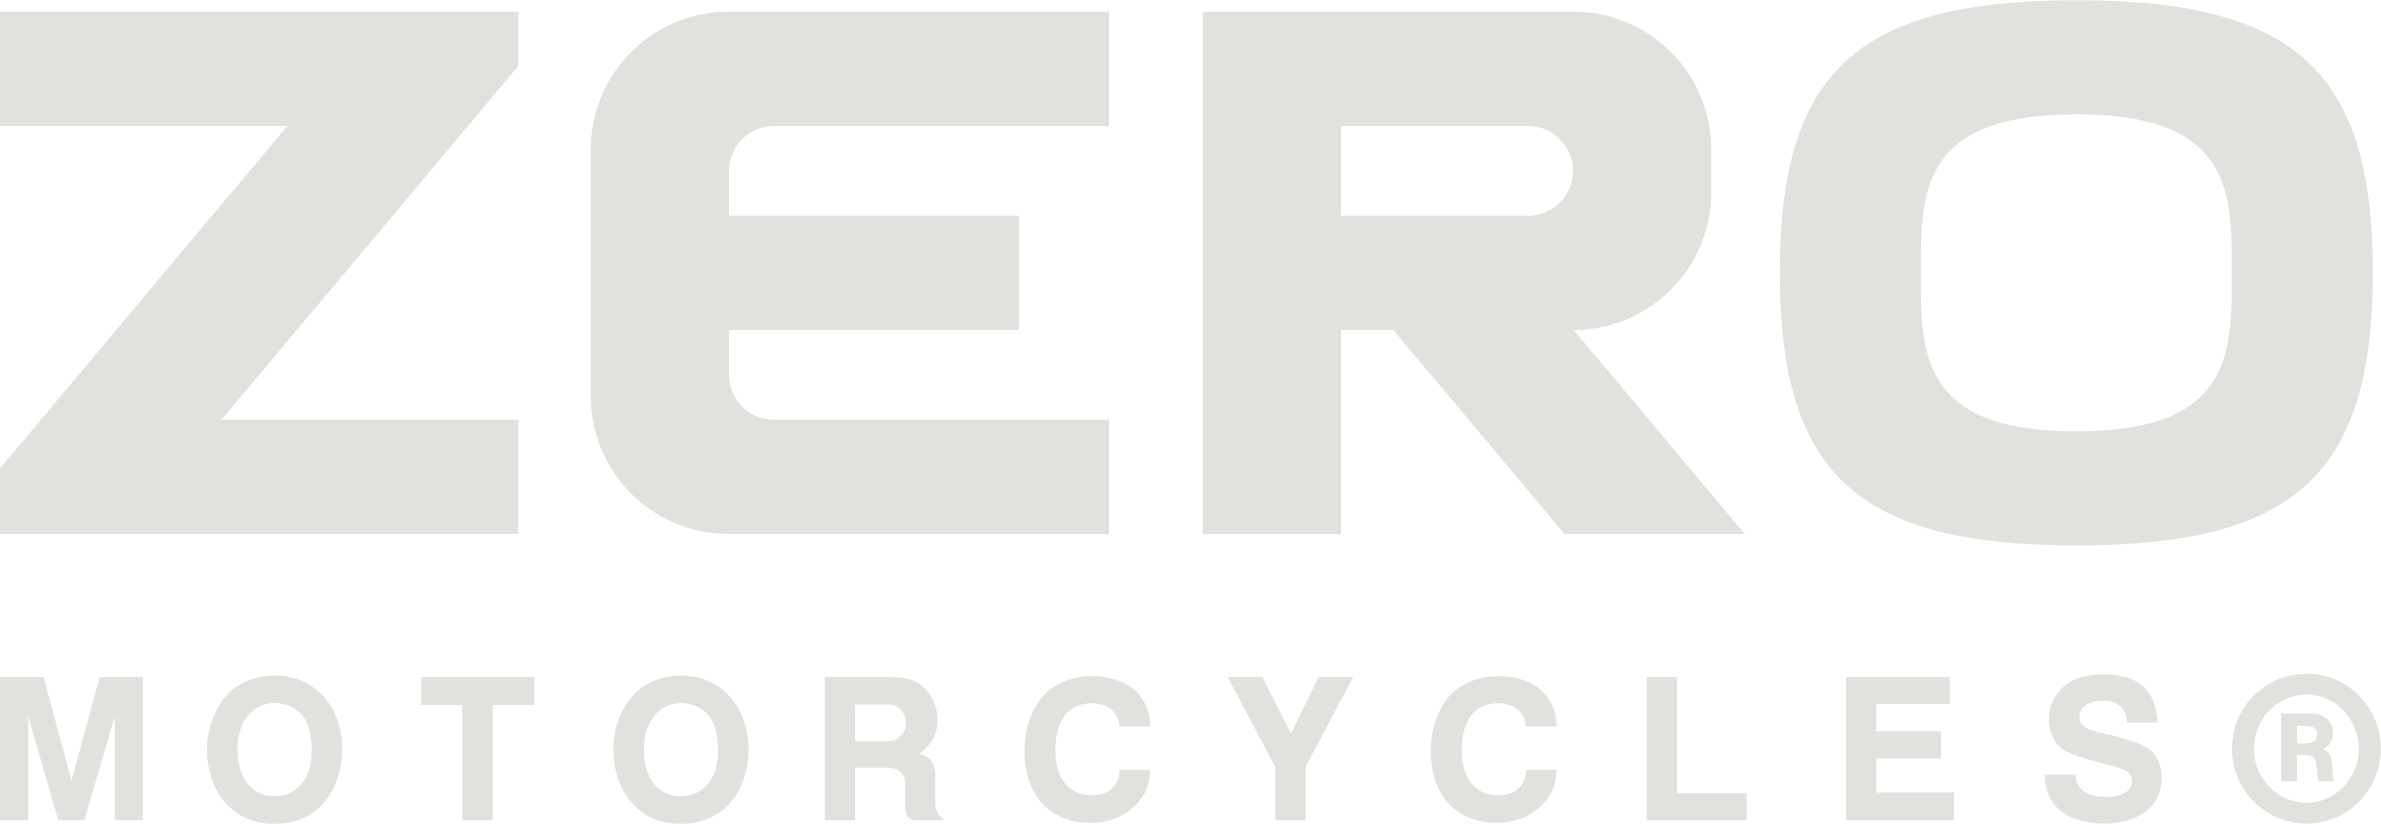 Buy premier Zero Motorcycles at Team Powersports in Garner